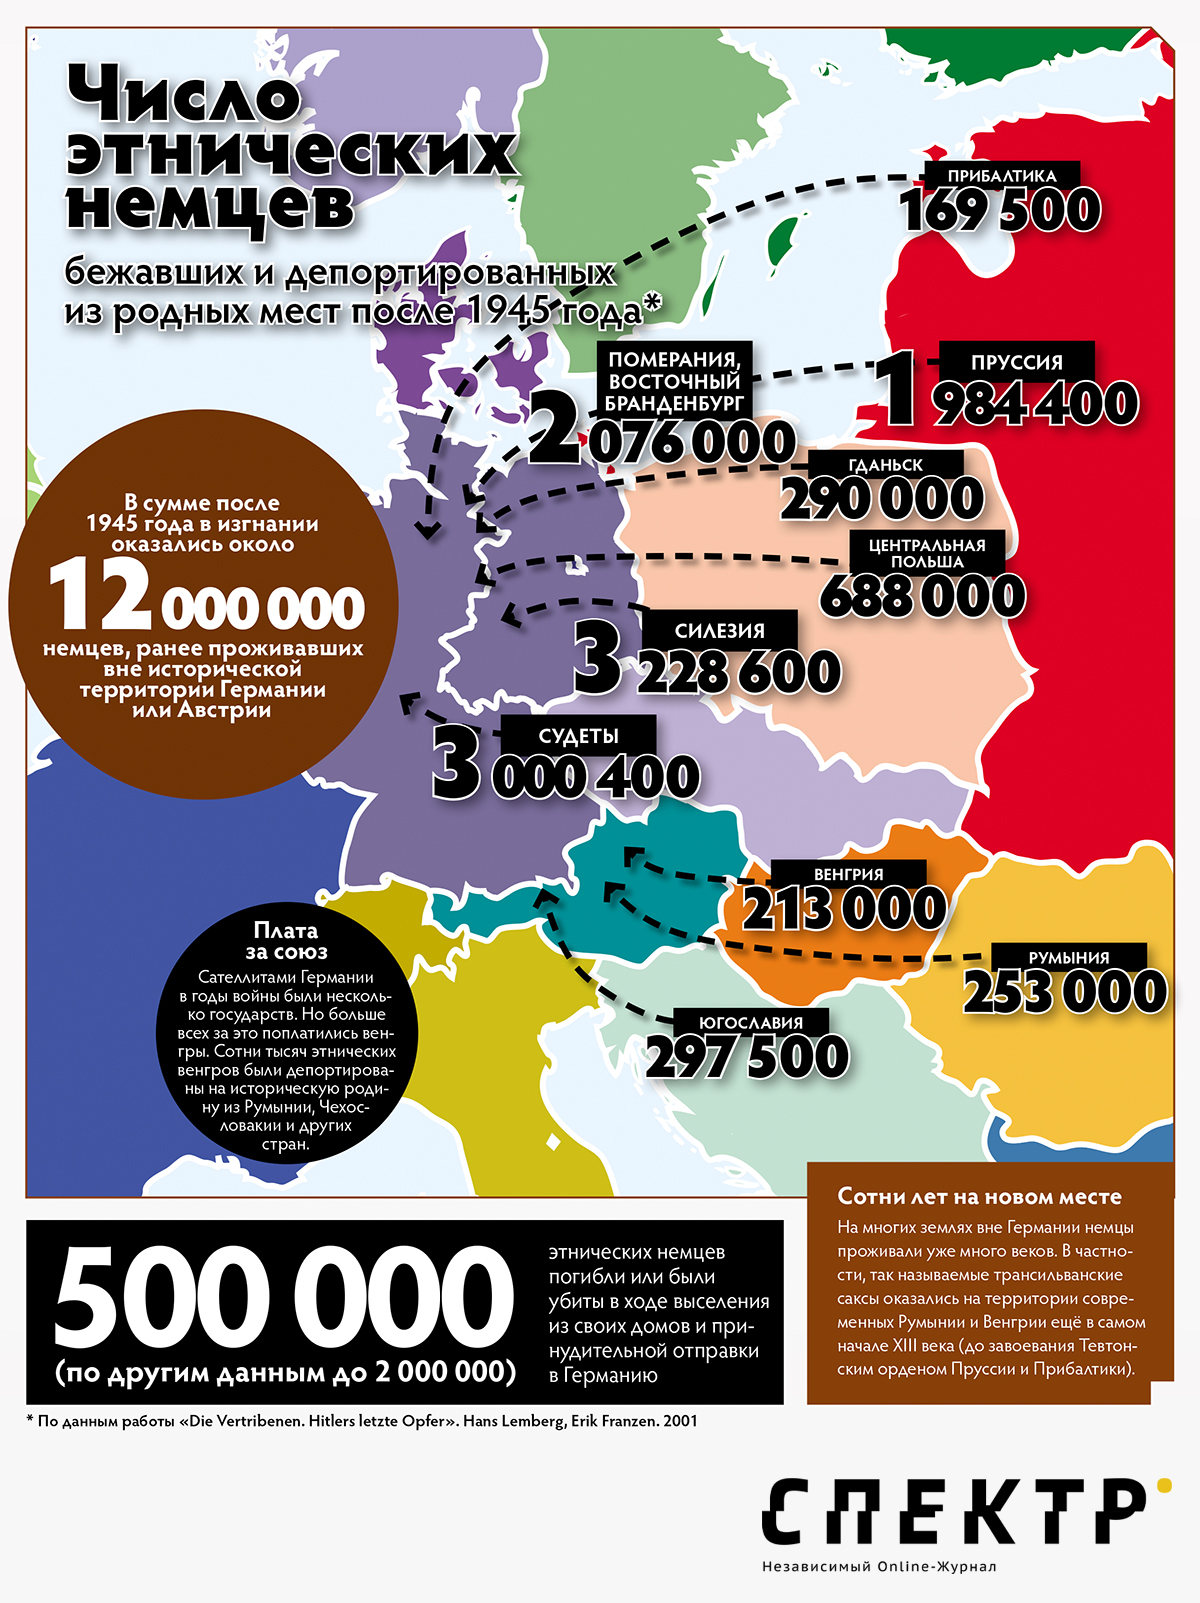 Депортация немцев в цифрах. Инфографика Максим Кузахметов/SpektrPress